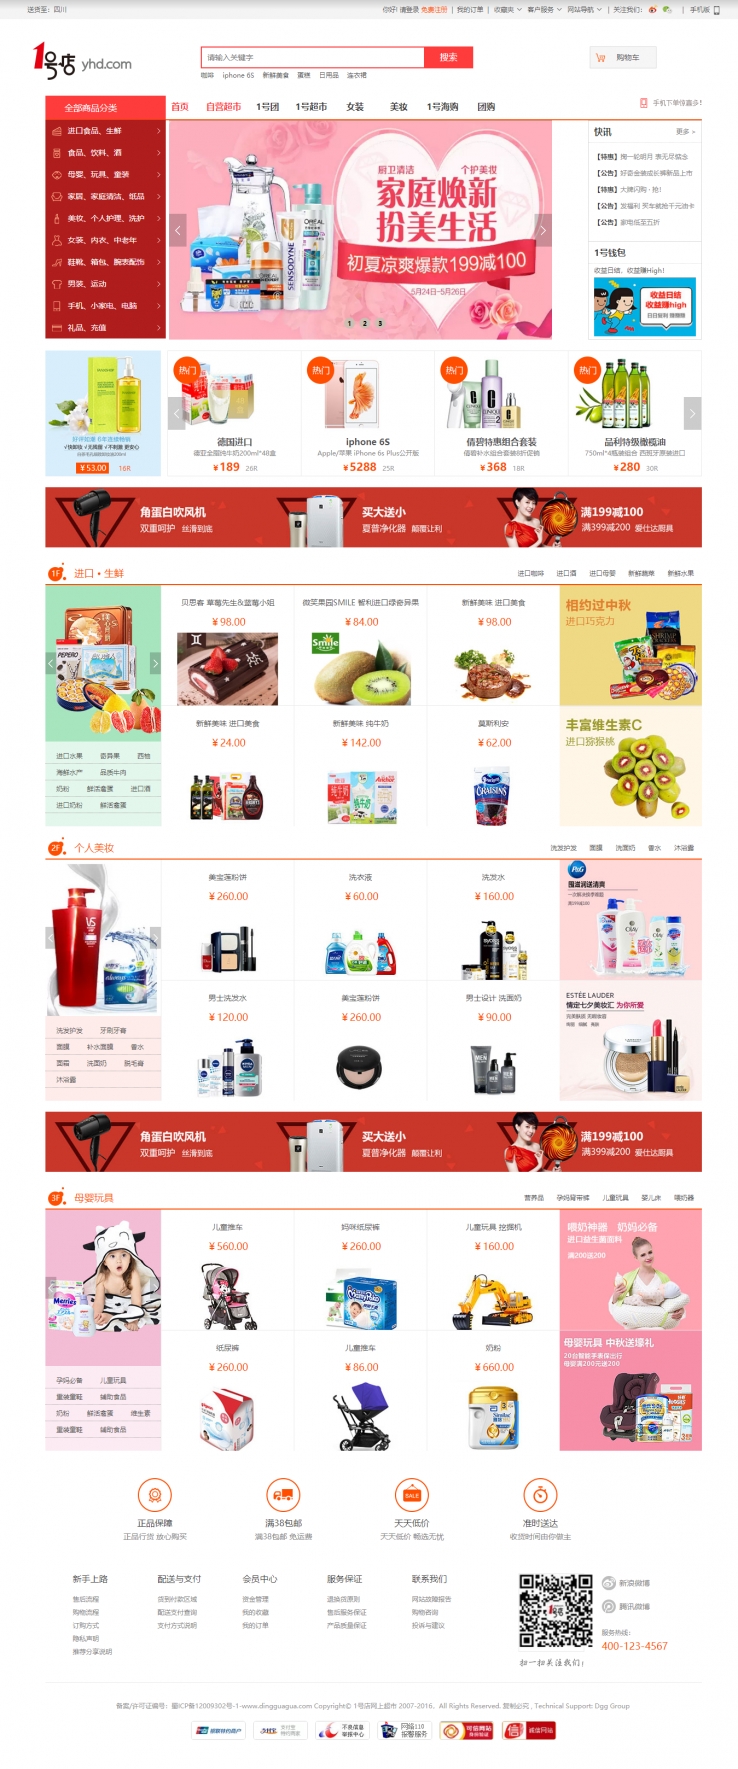 红色简洁风格的仿一号店网上超市整站网站